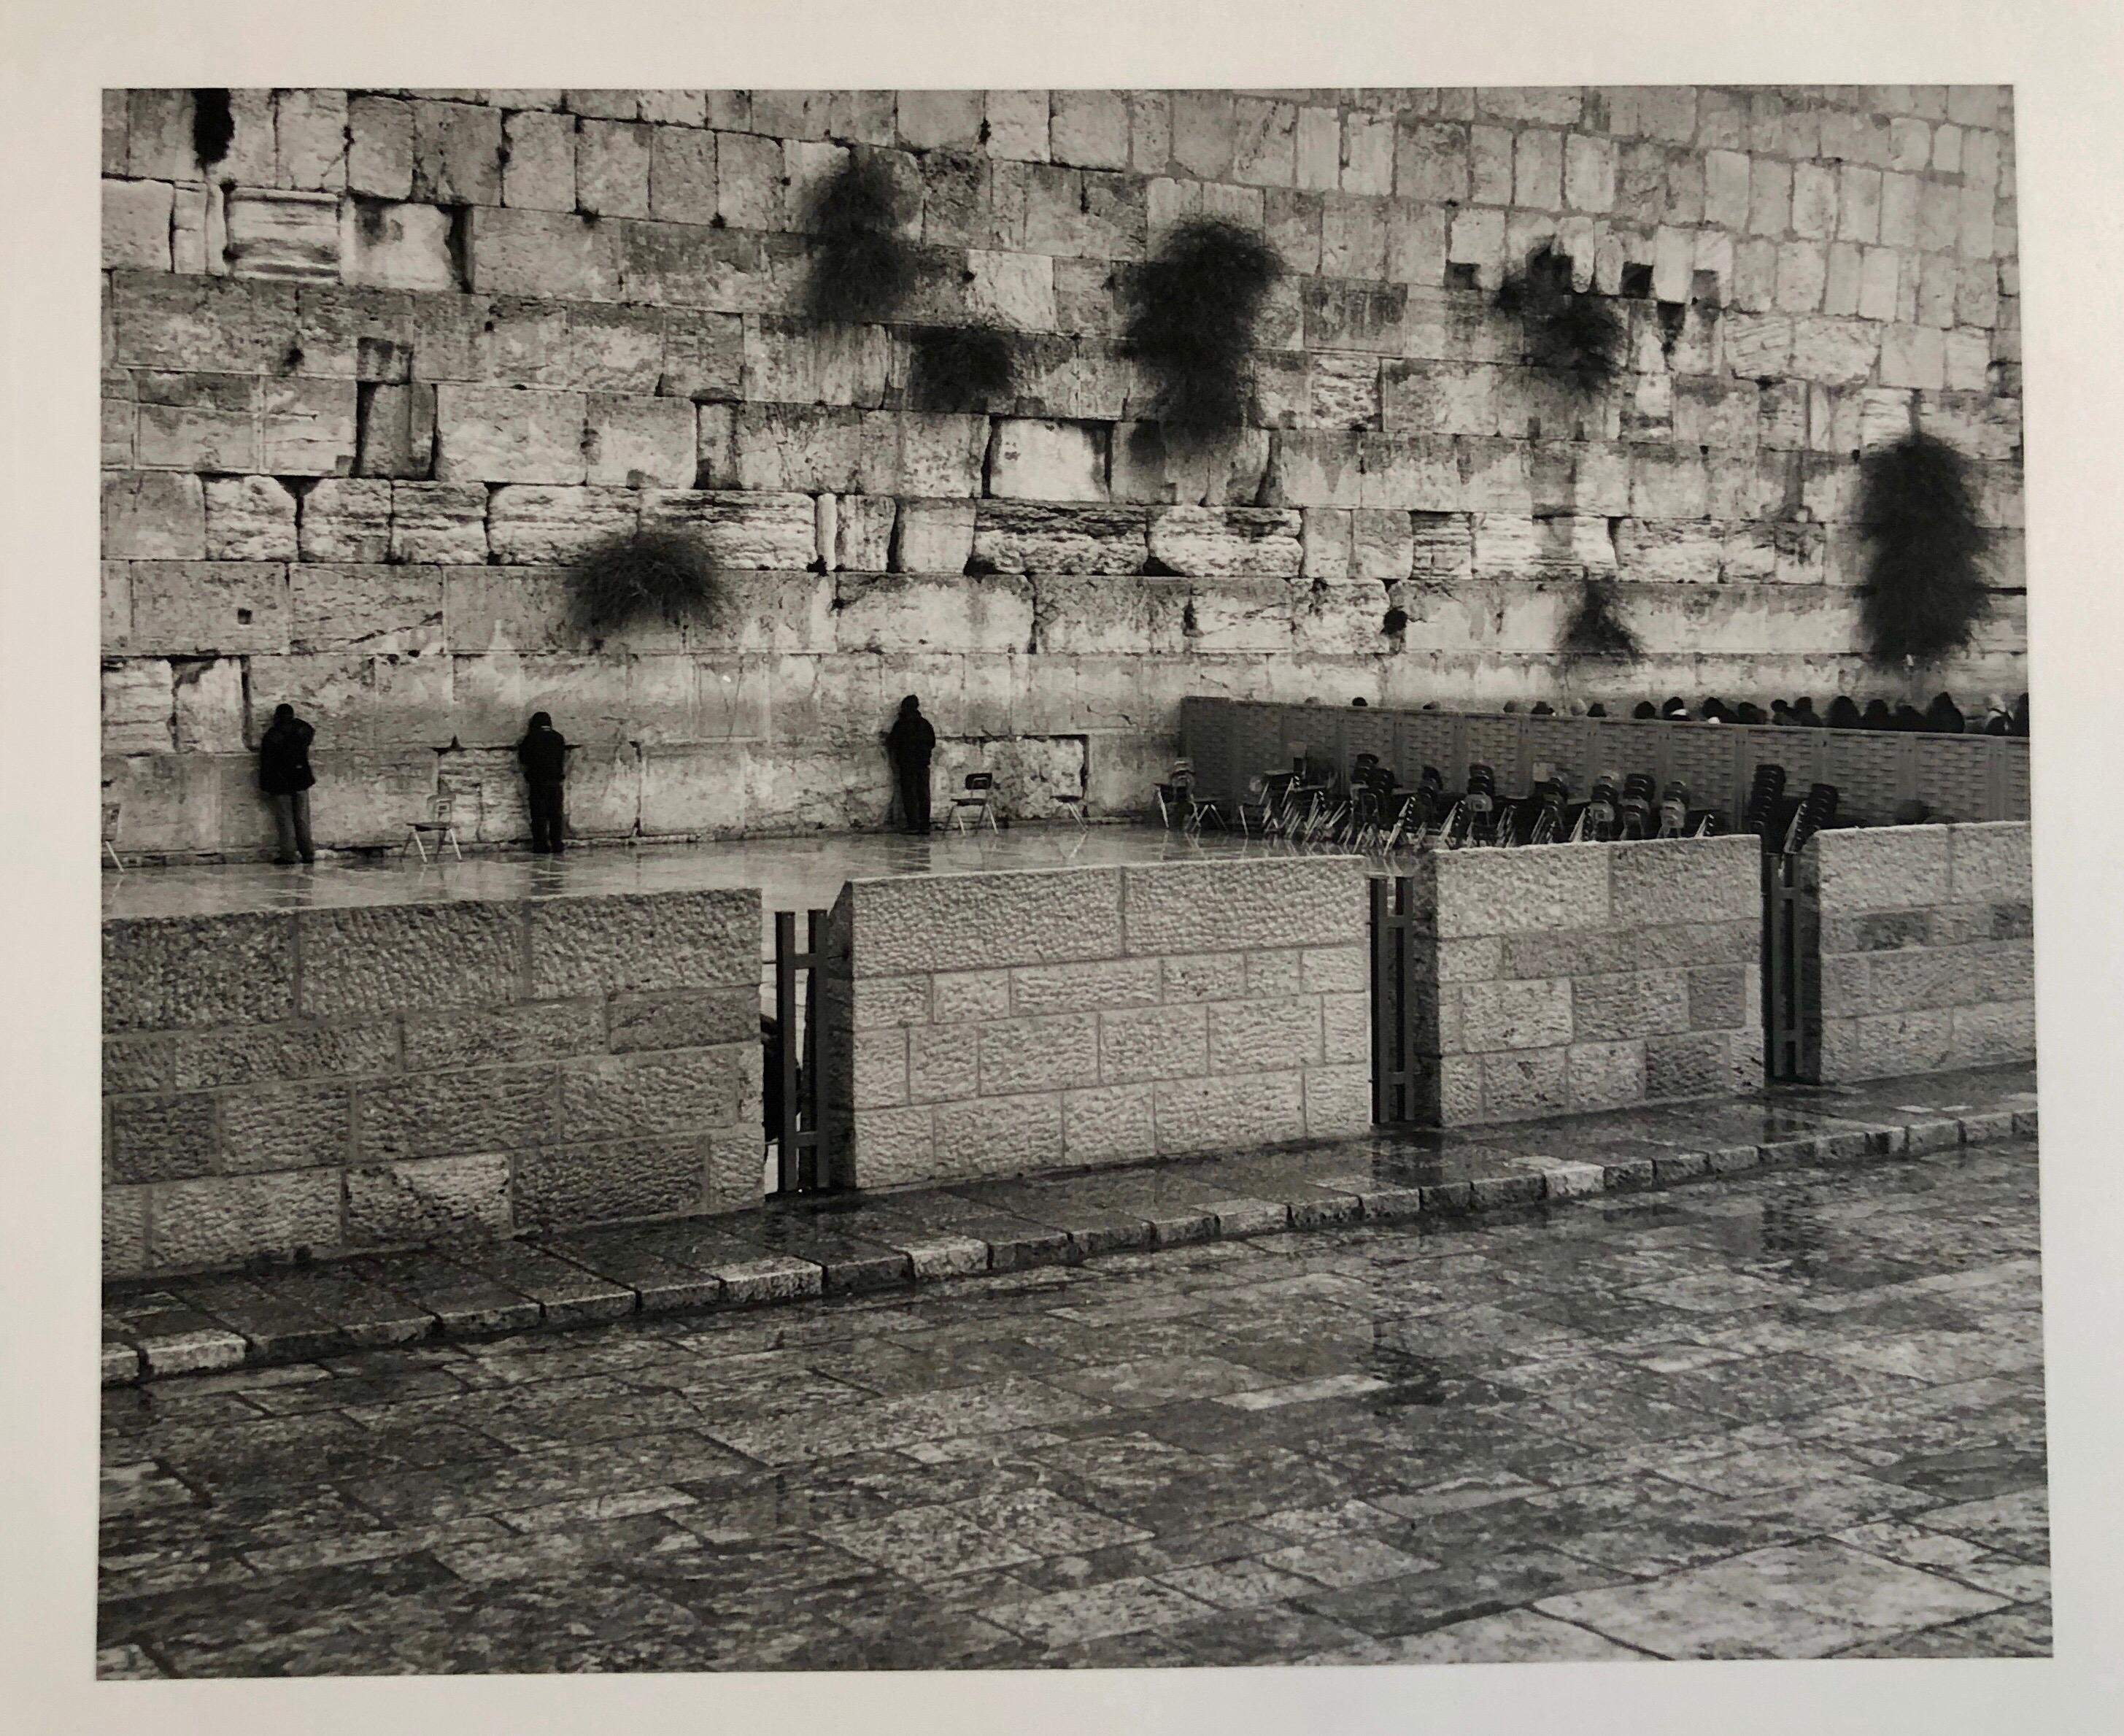 Landscape Photograph Mikael Levin - Jérusalem, Israël occidentale édition murale de 5 tirages photographiques vintage à la gélatine argentique